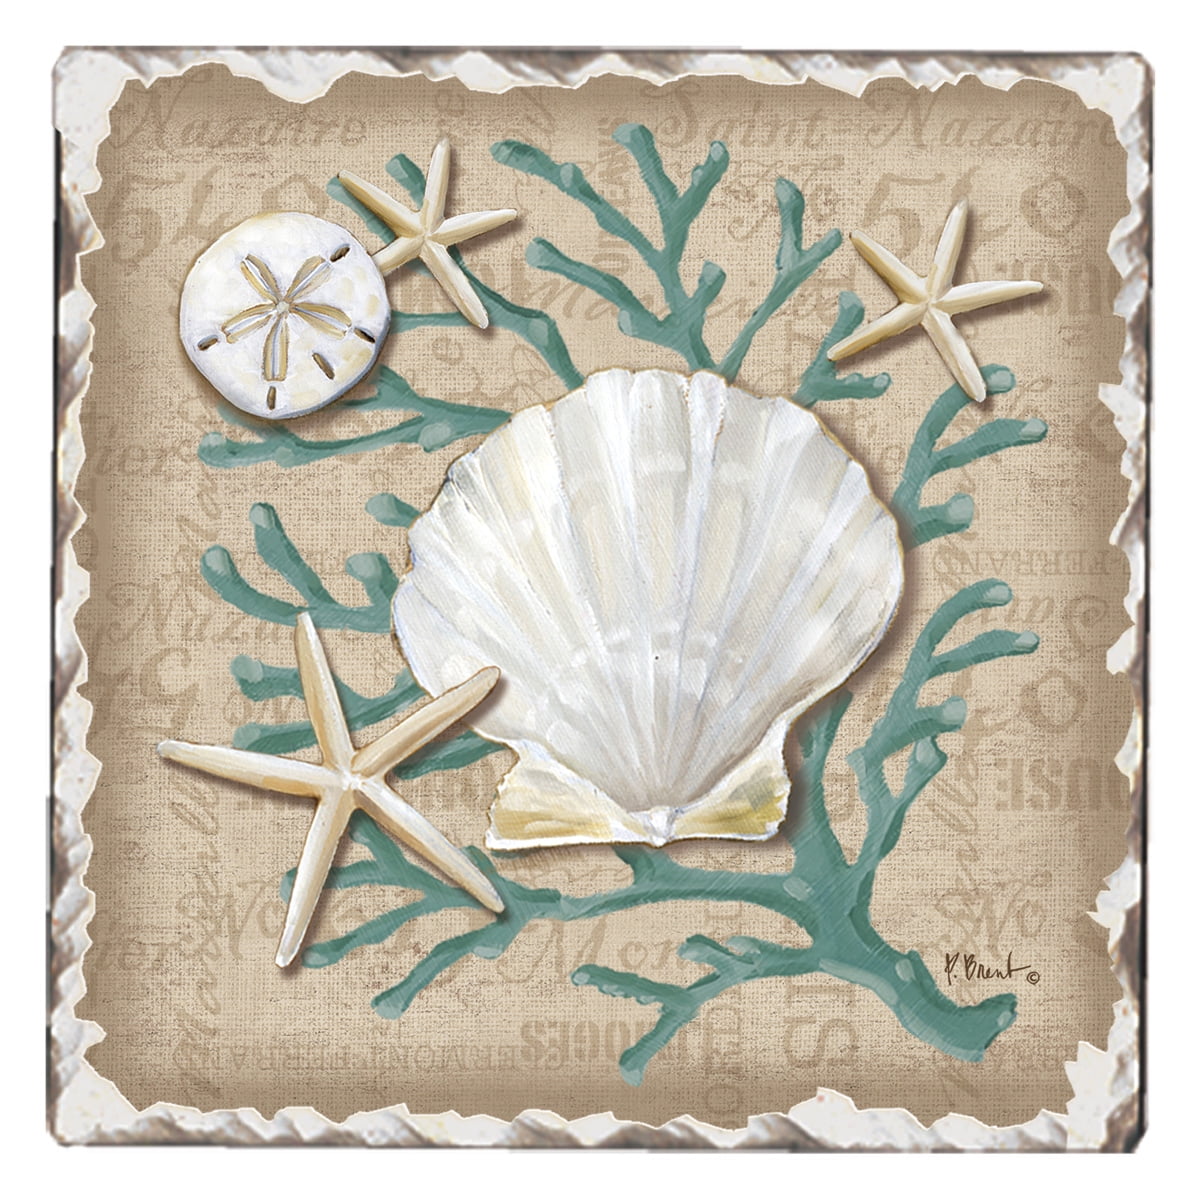 Counterart Absorbent Stone Car Linen Shells Seashells Coaster (Set of 2)